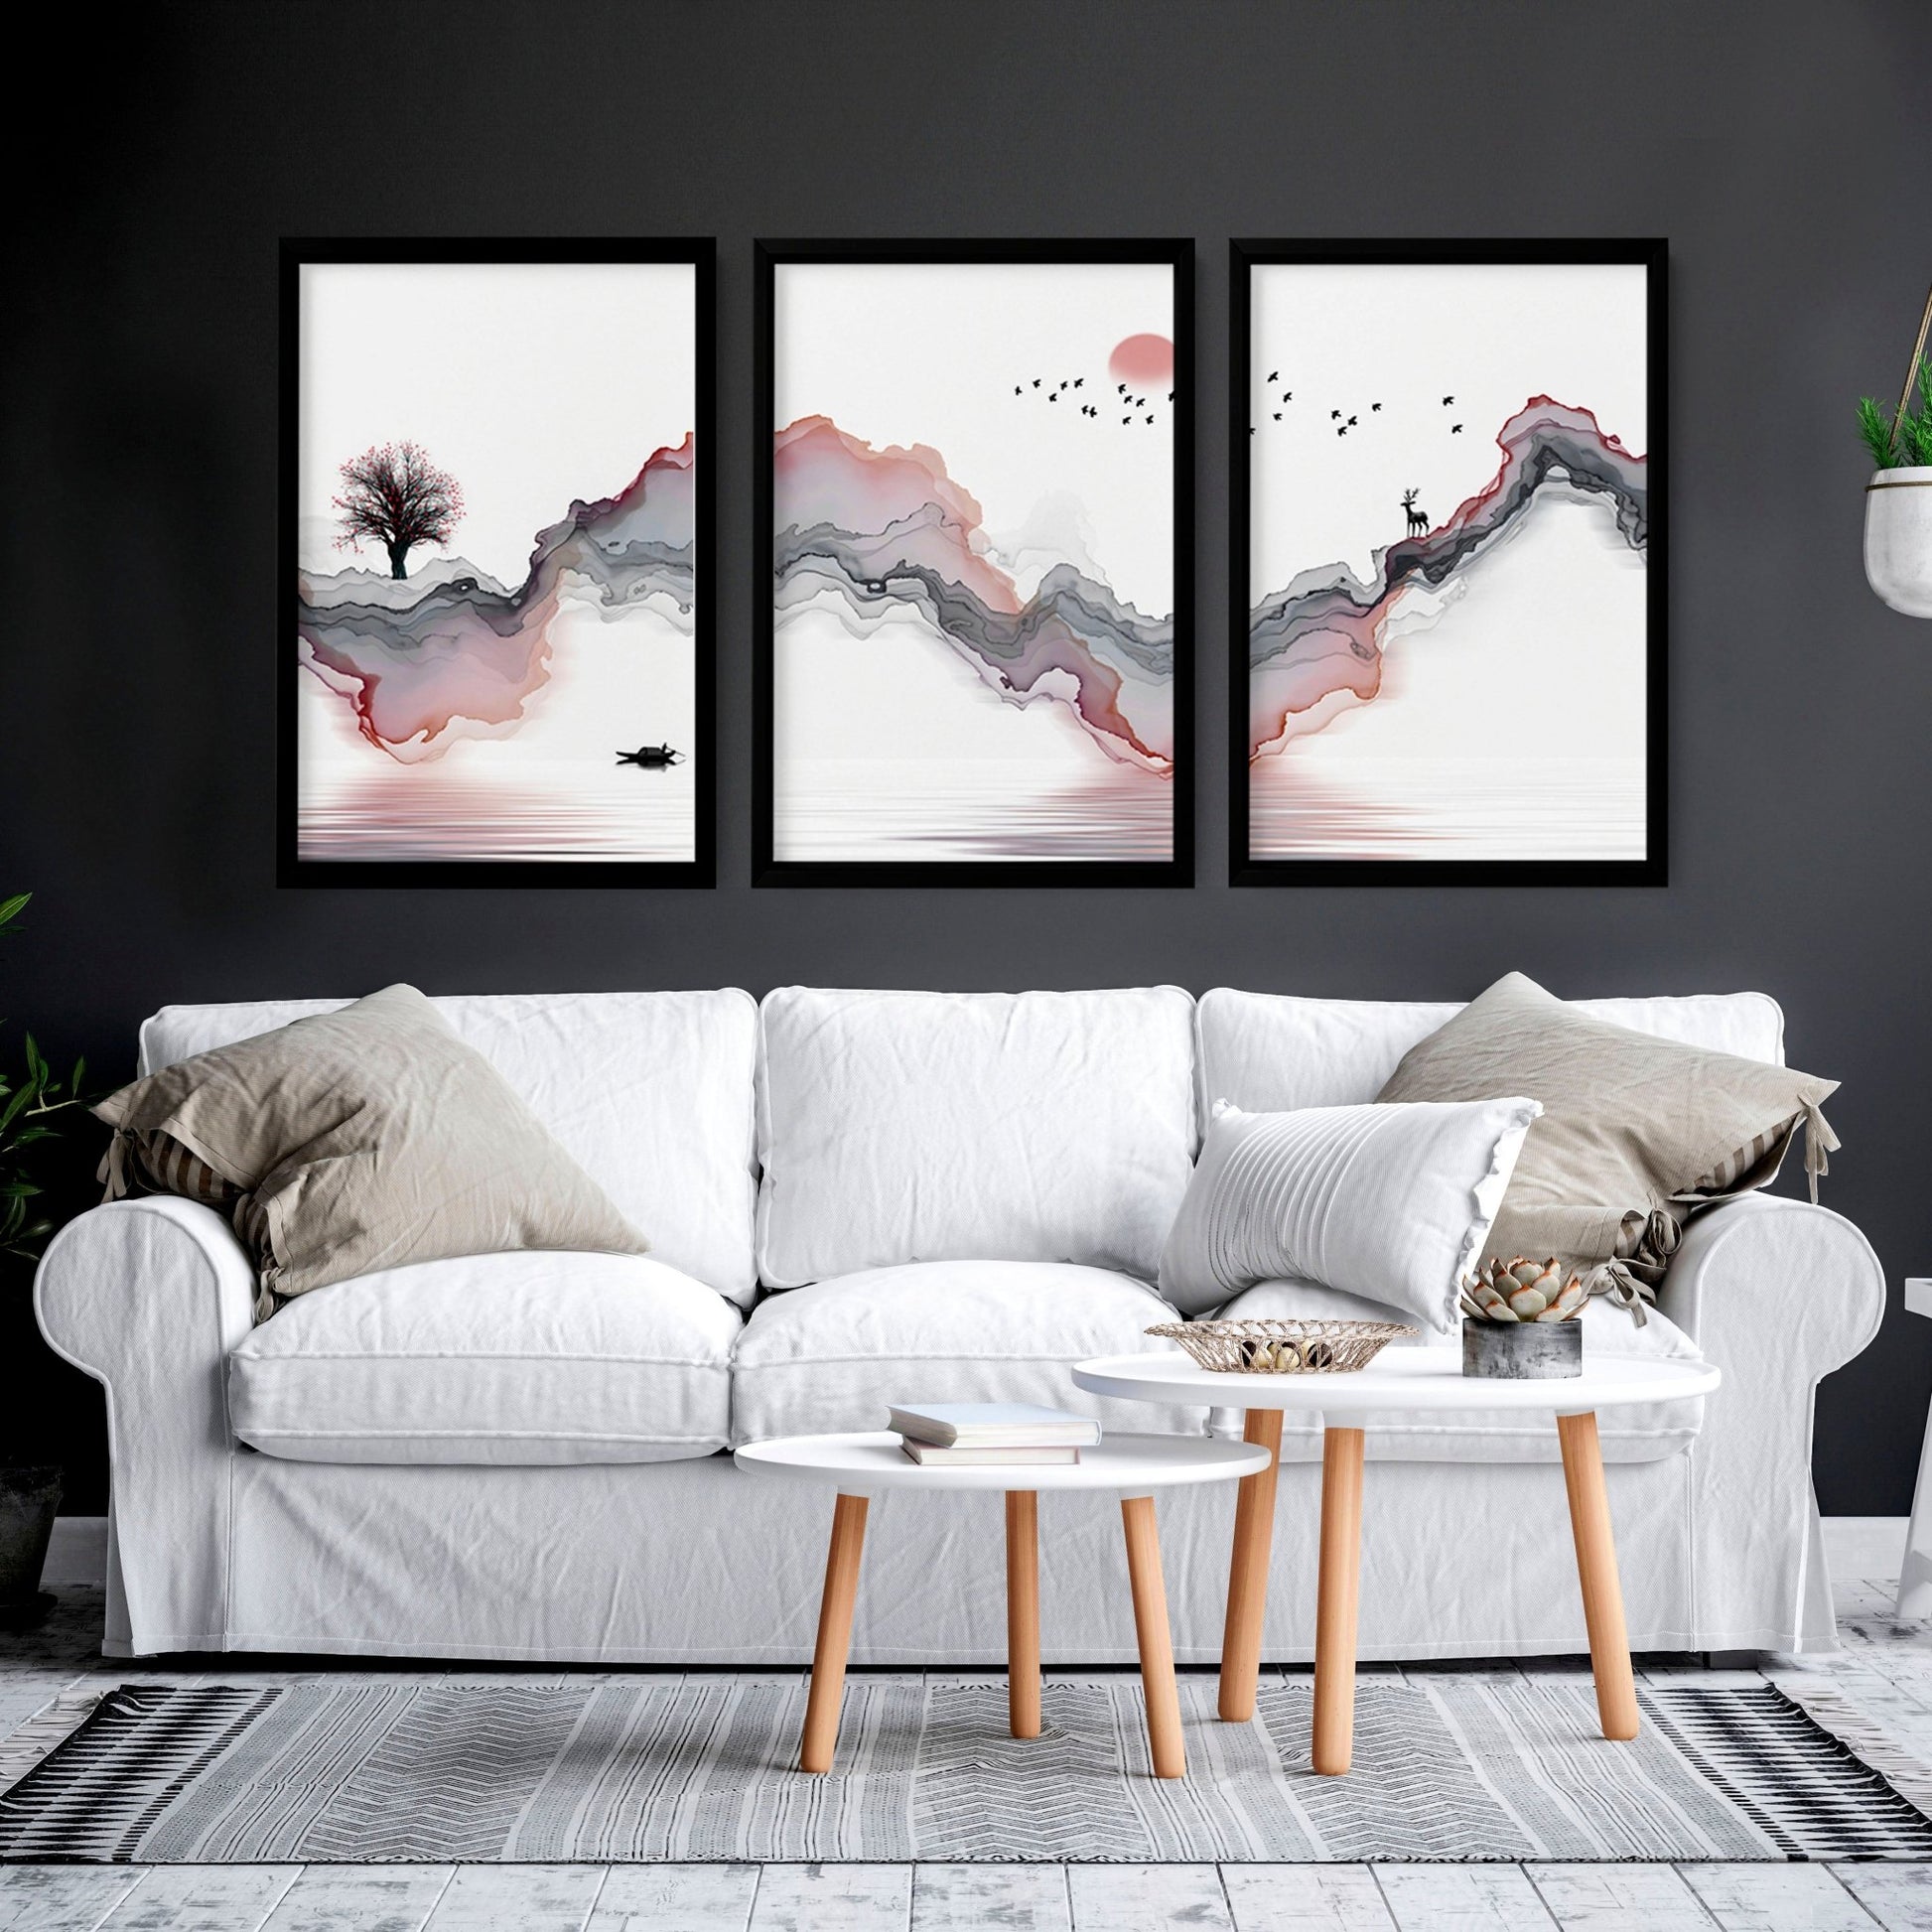 Wall Art Zen inspired | set of 3 wall art prints - About Wall Art